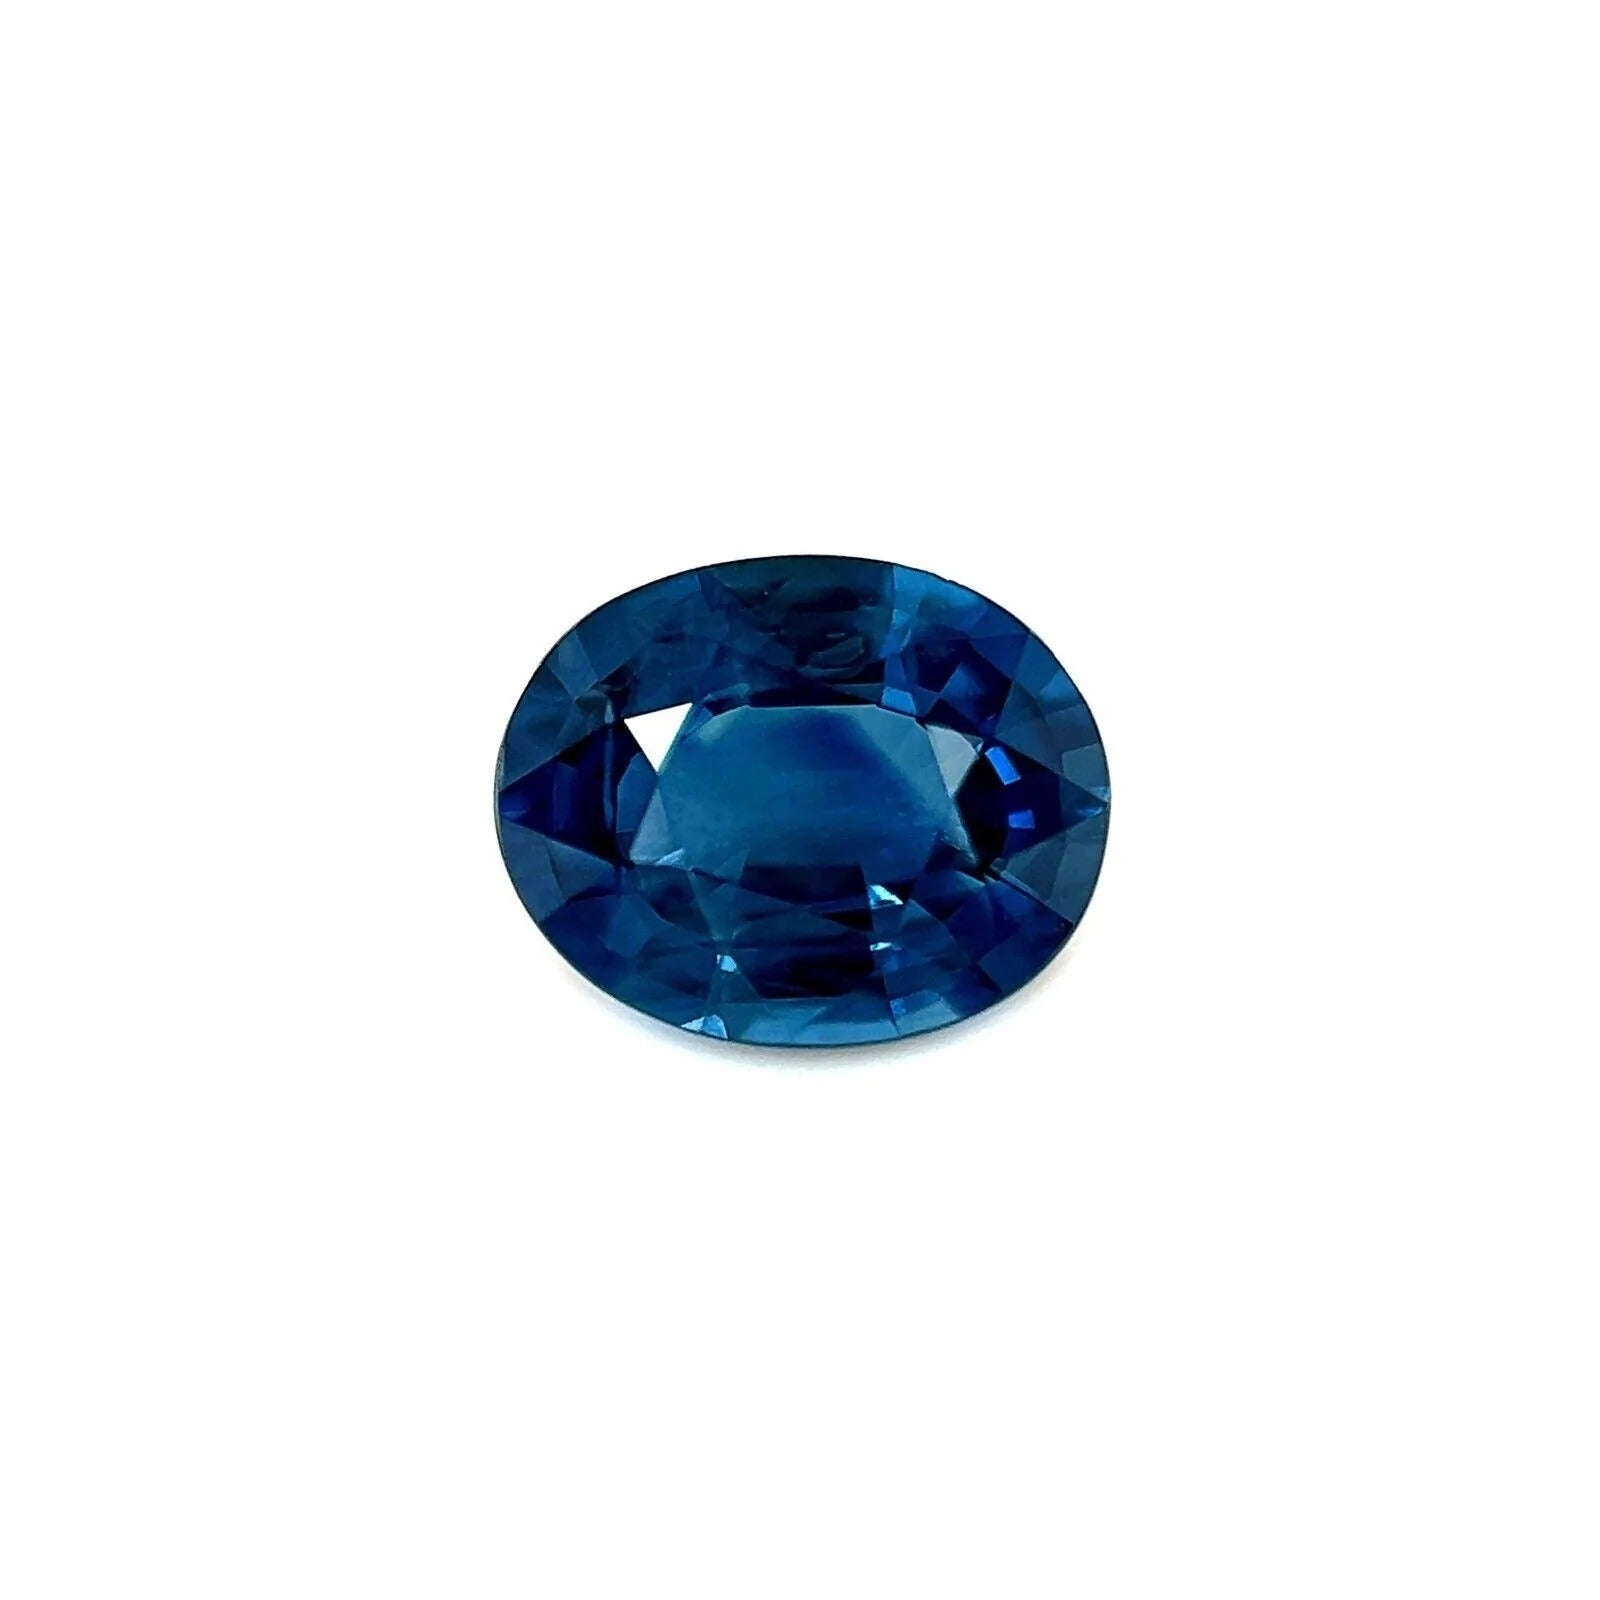 Natural Australian Deep Blue Sapphire 0.89ct Oval Cut Loose Gem